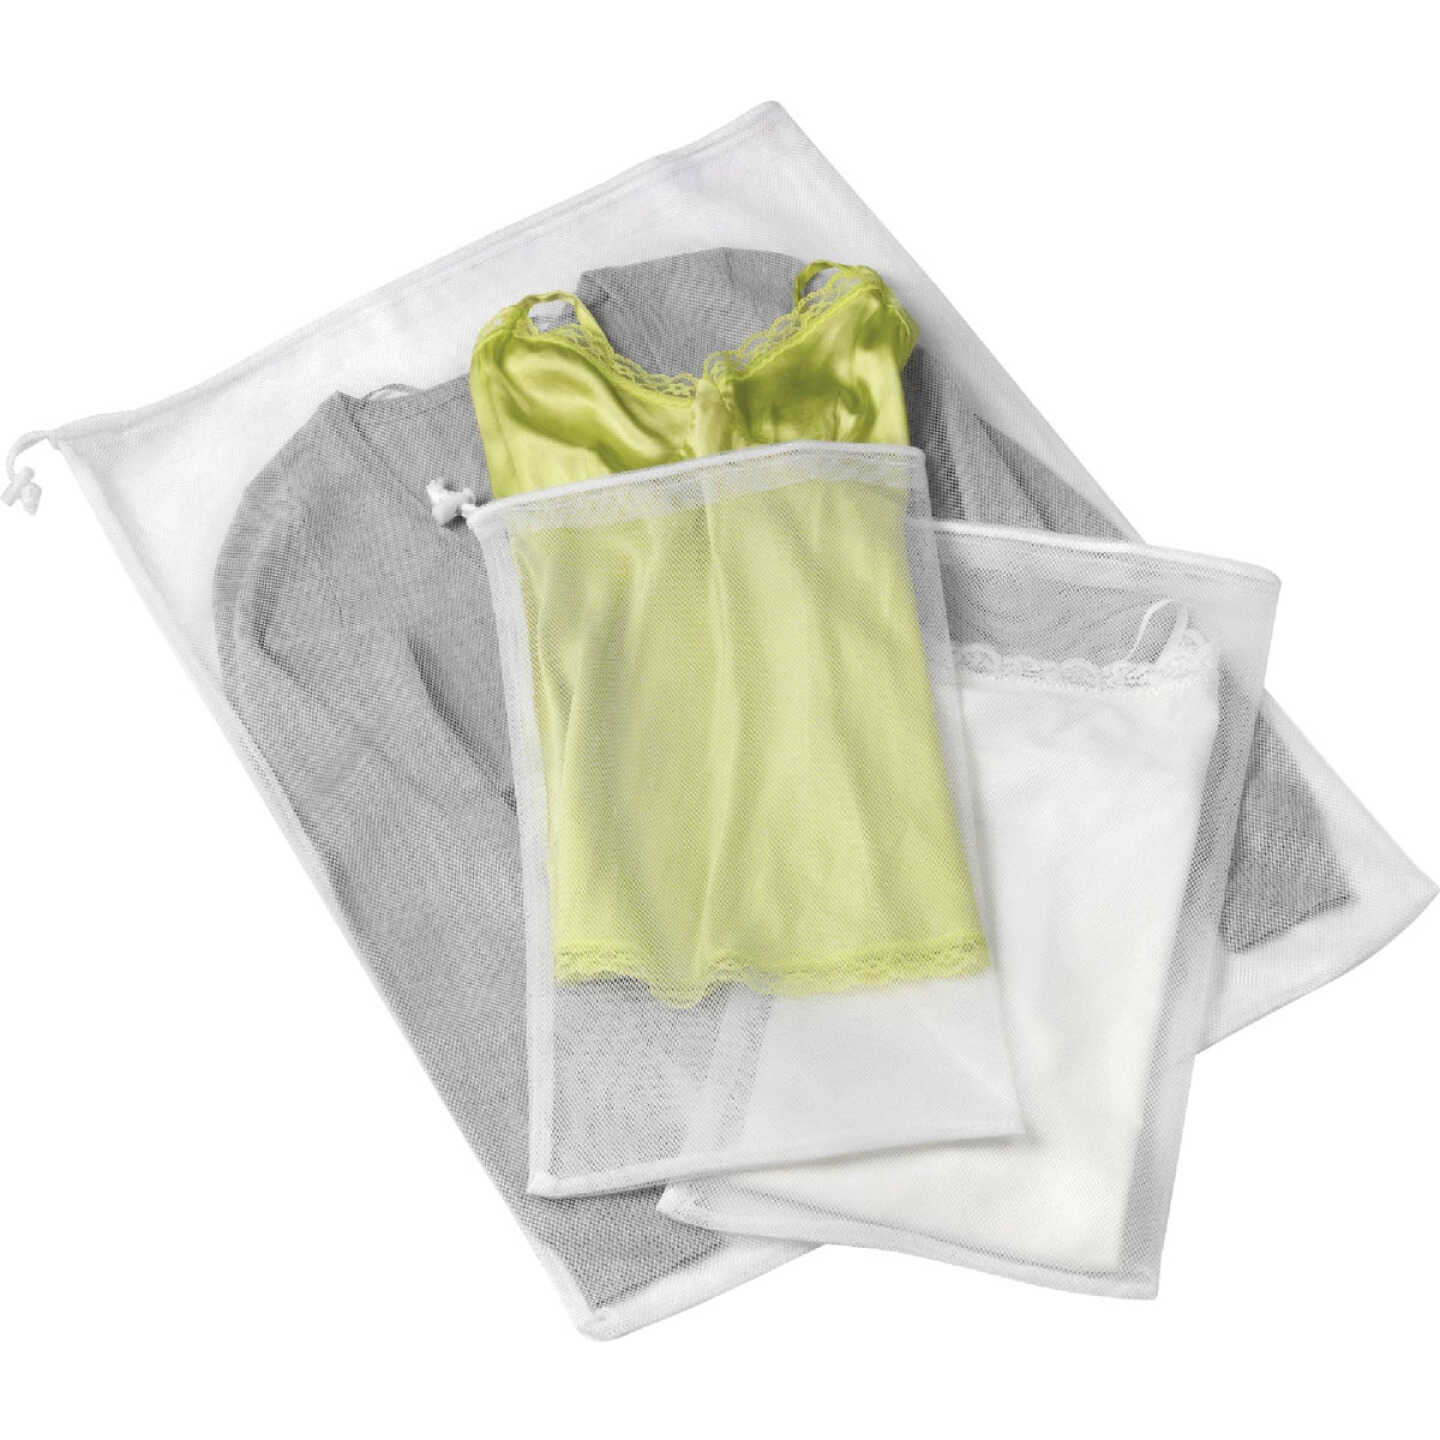 Whitmor Mesh Laundry Bags (3-Pack) - Dazey's Supply